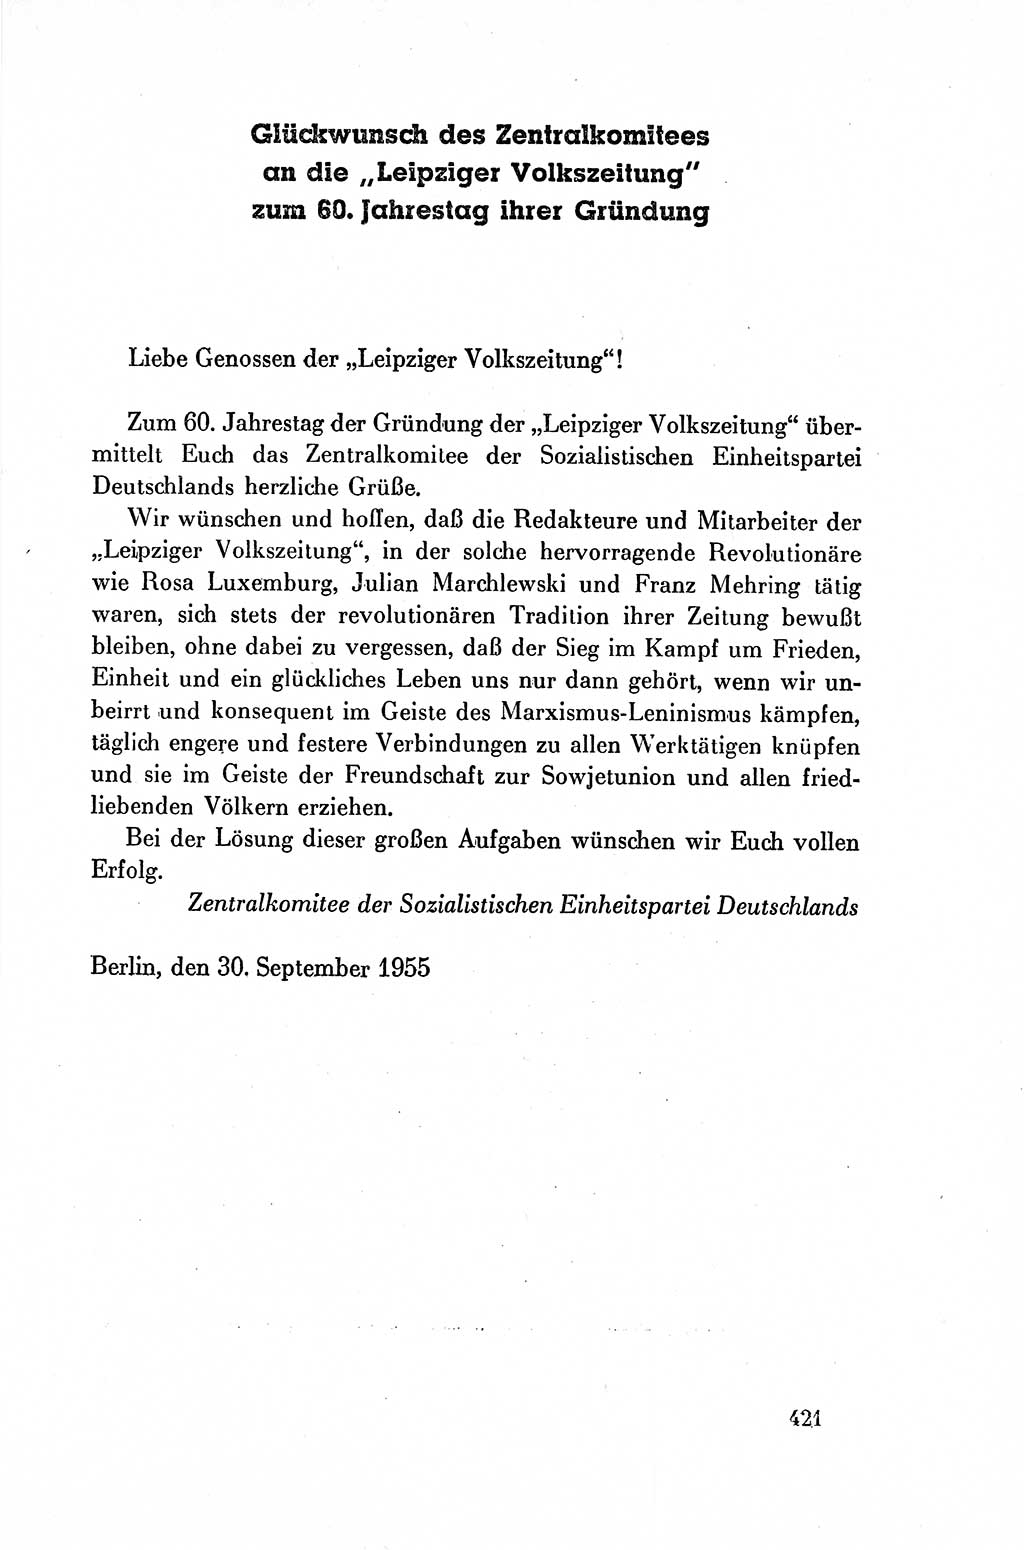 Dokumente der Sozialistischen Einheitspartei Deutschlands (SED) [Deutsche Demokratische Republik (DDR)] 1954-1955, Seite 421 (Dok. SED DDR 1954-1955, S. 421)